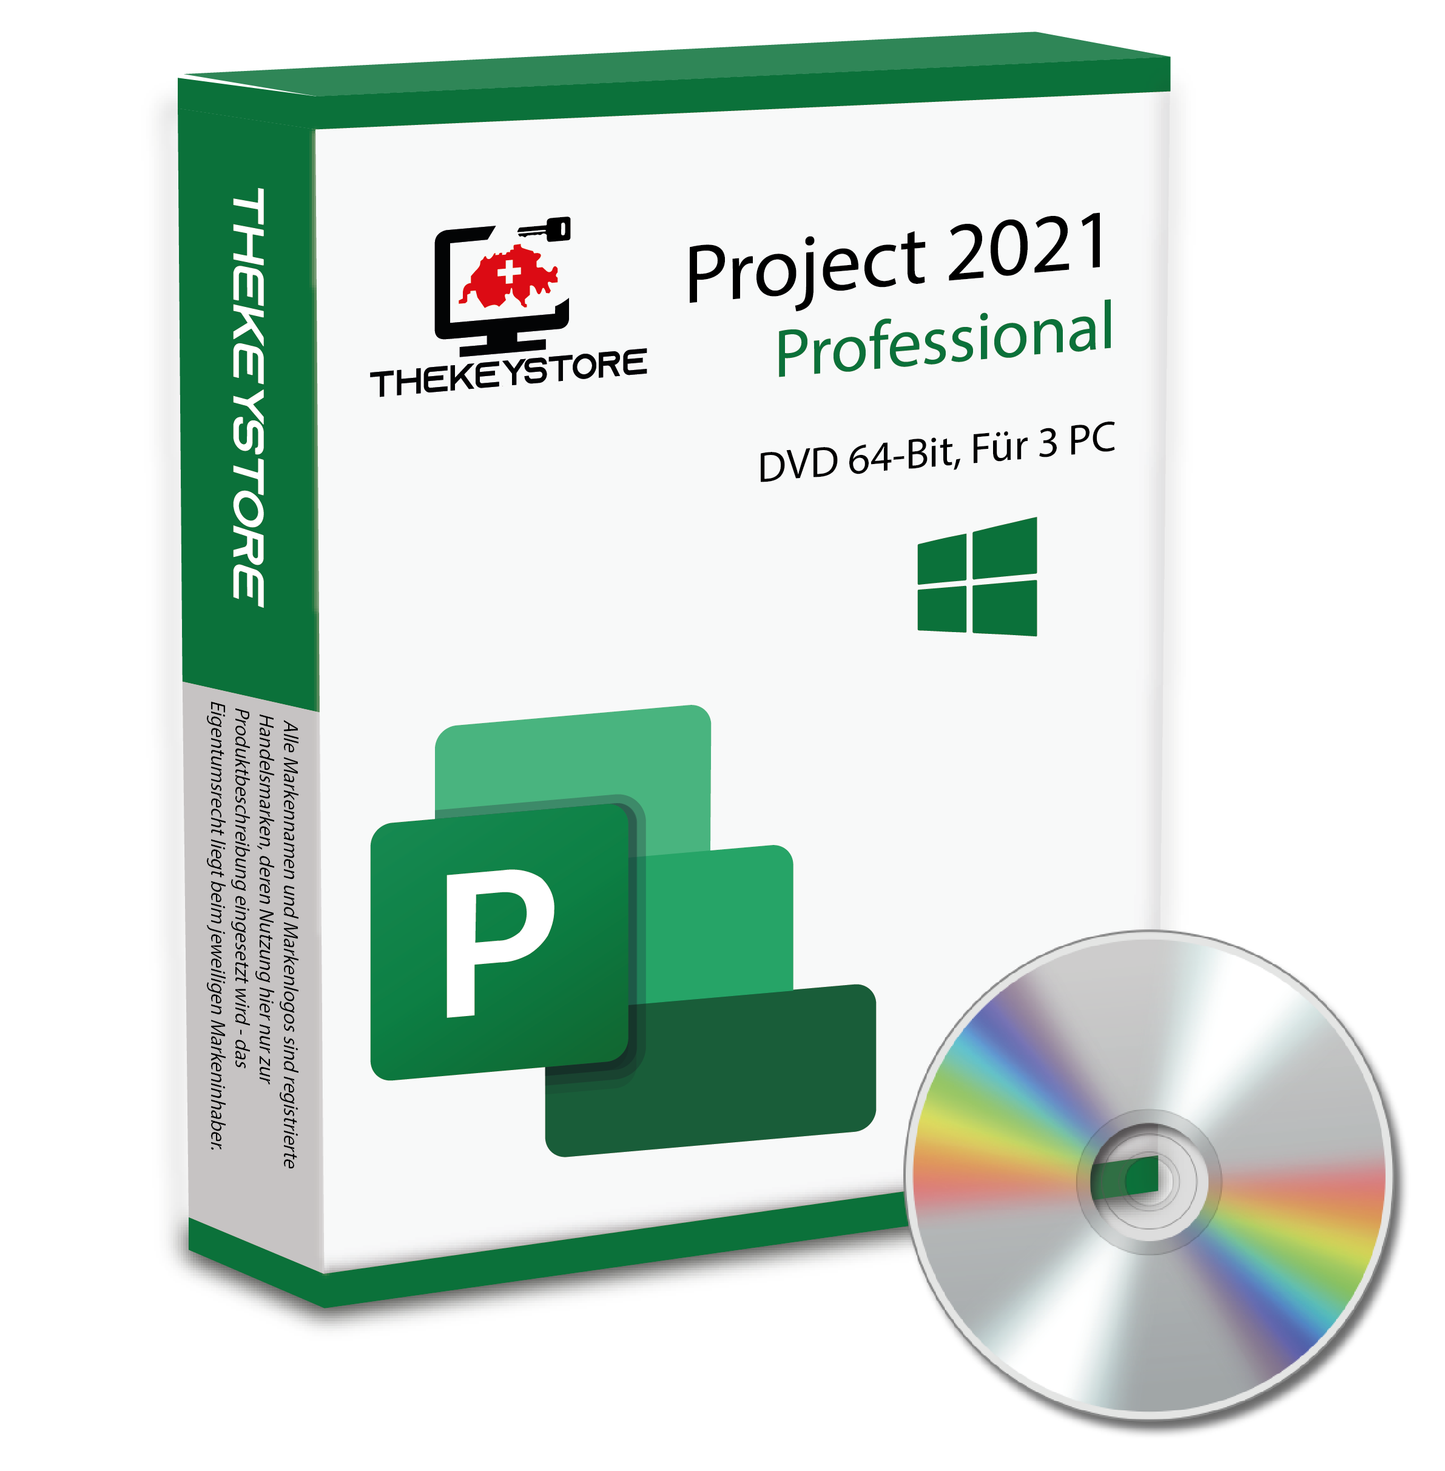 Microsoft Project 2021 Professional - Für 3 PC - TheKeyStore Schweiz